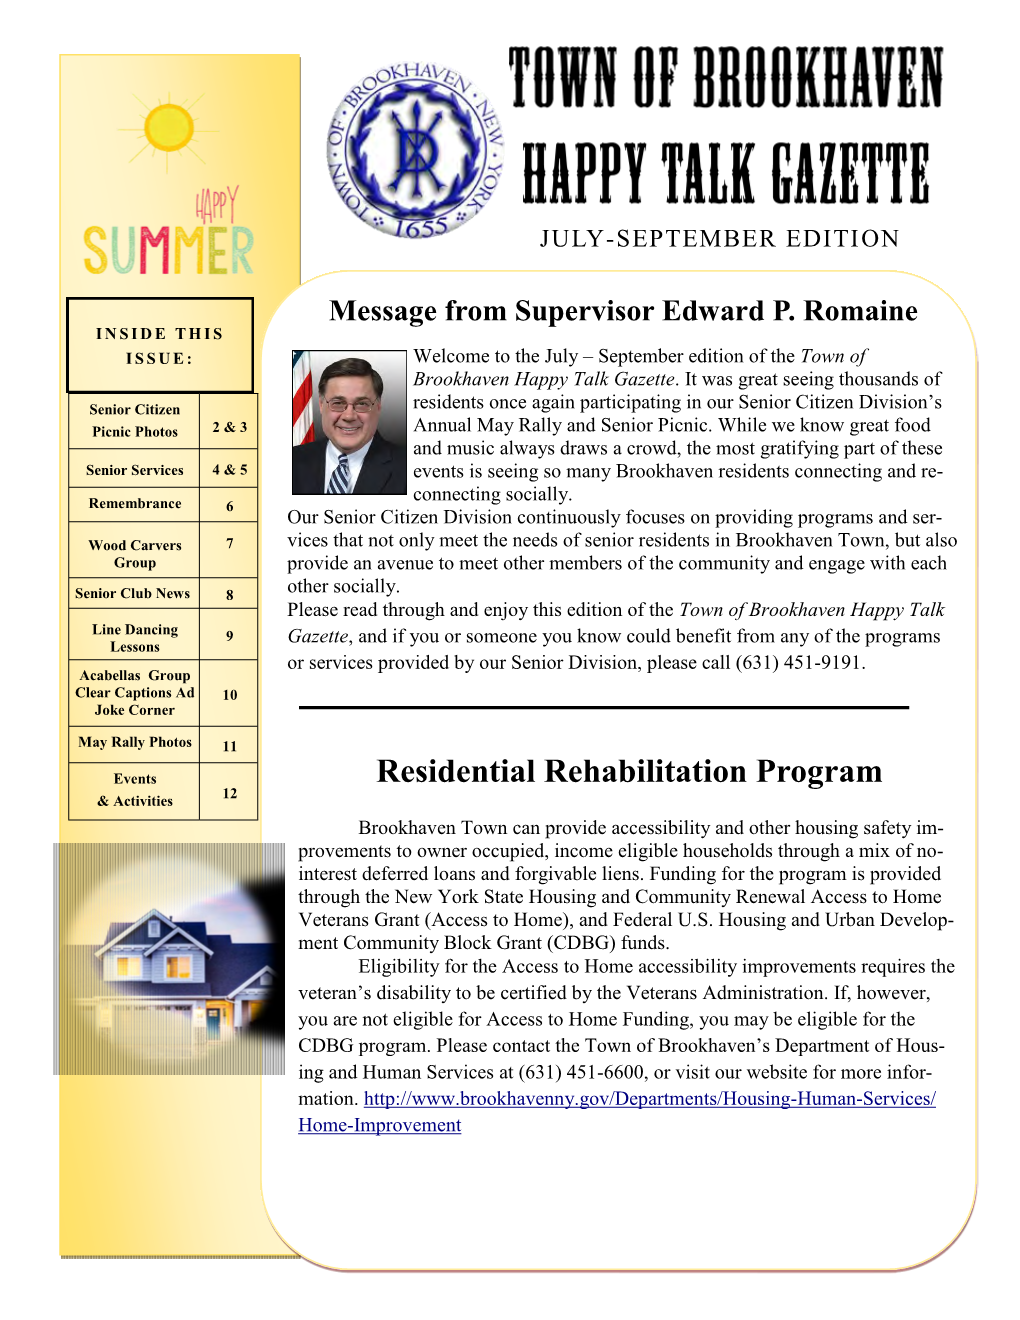 Residential Rehabilitation Program